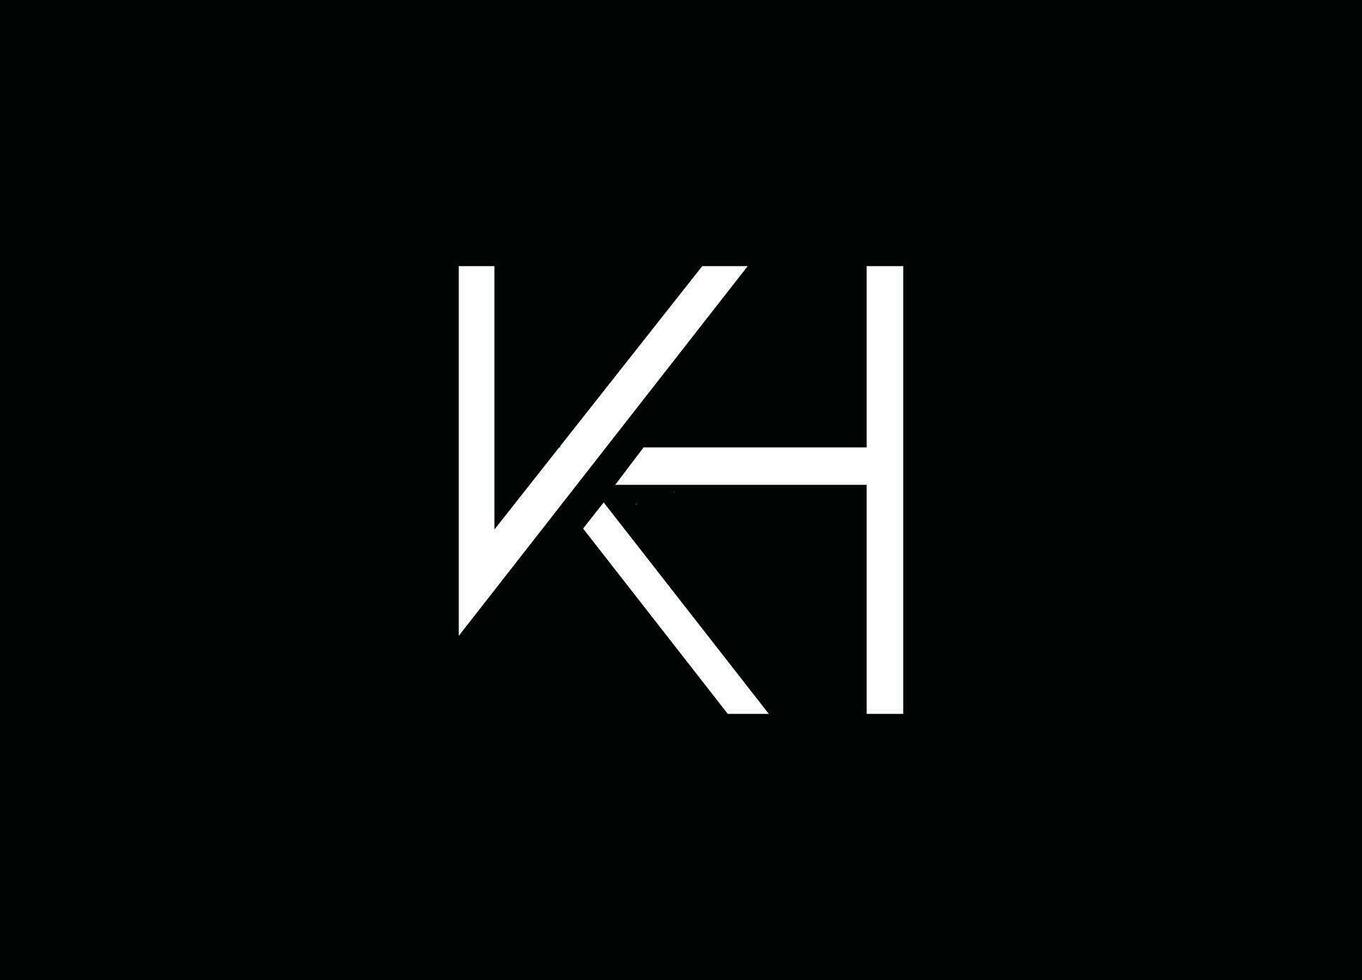 kh,hk ,hk brev logotyp, hk design, hk företag, hk studio ,hk logotyp, hk kreativ, hkinitialer vektor